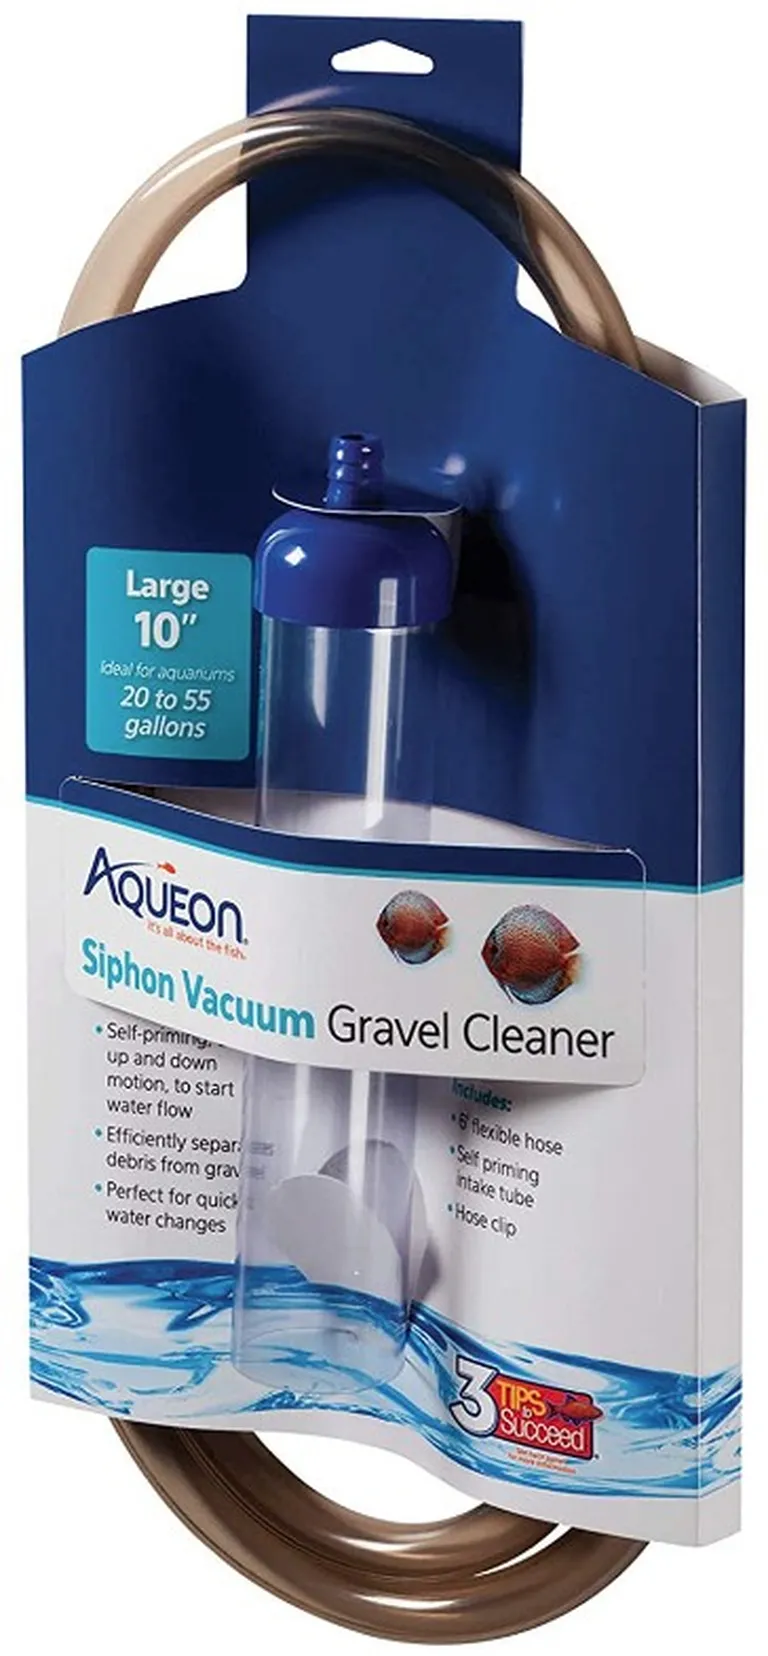 Aqueon Siphon Vacuum Gravel Cleaner Photo 1